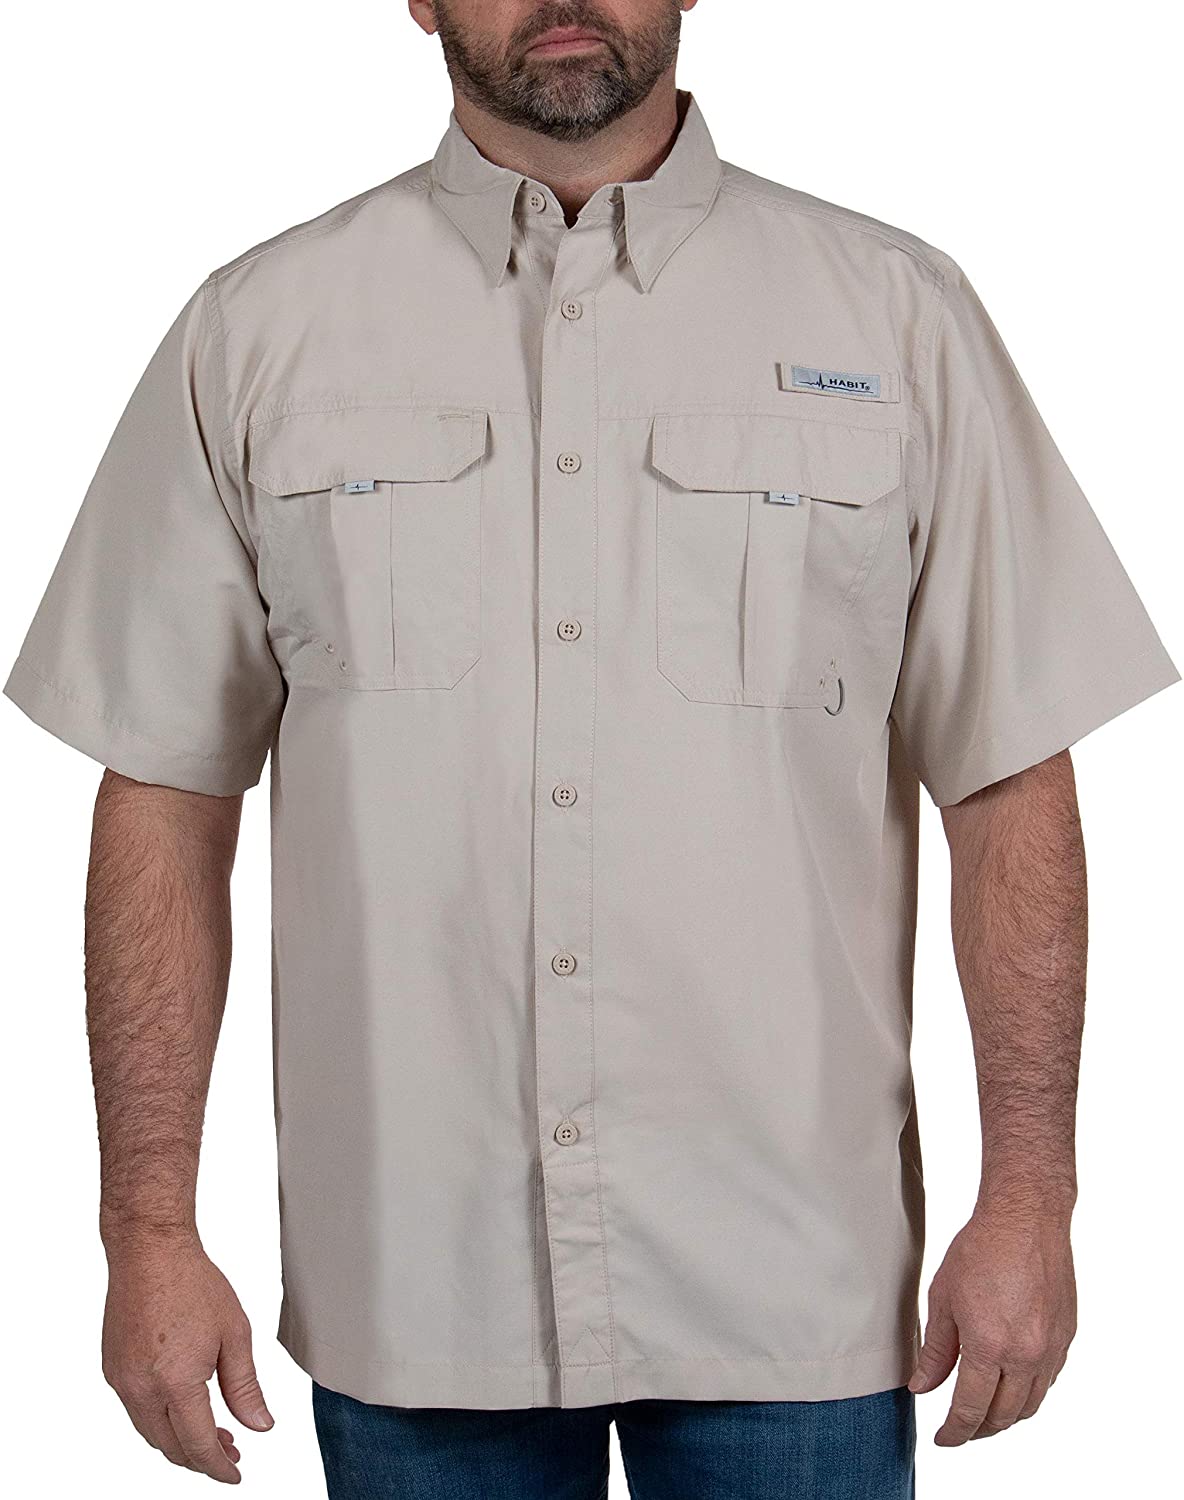 HABIT Men's Fourche Mountain Short Sleeve River Guide Fishing Shirt - UPF  40+ UV